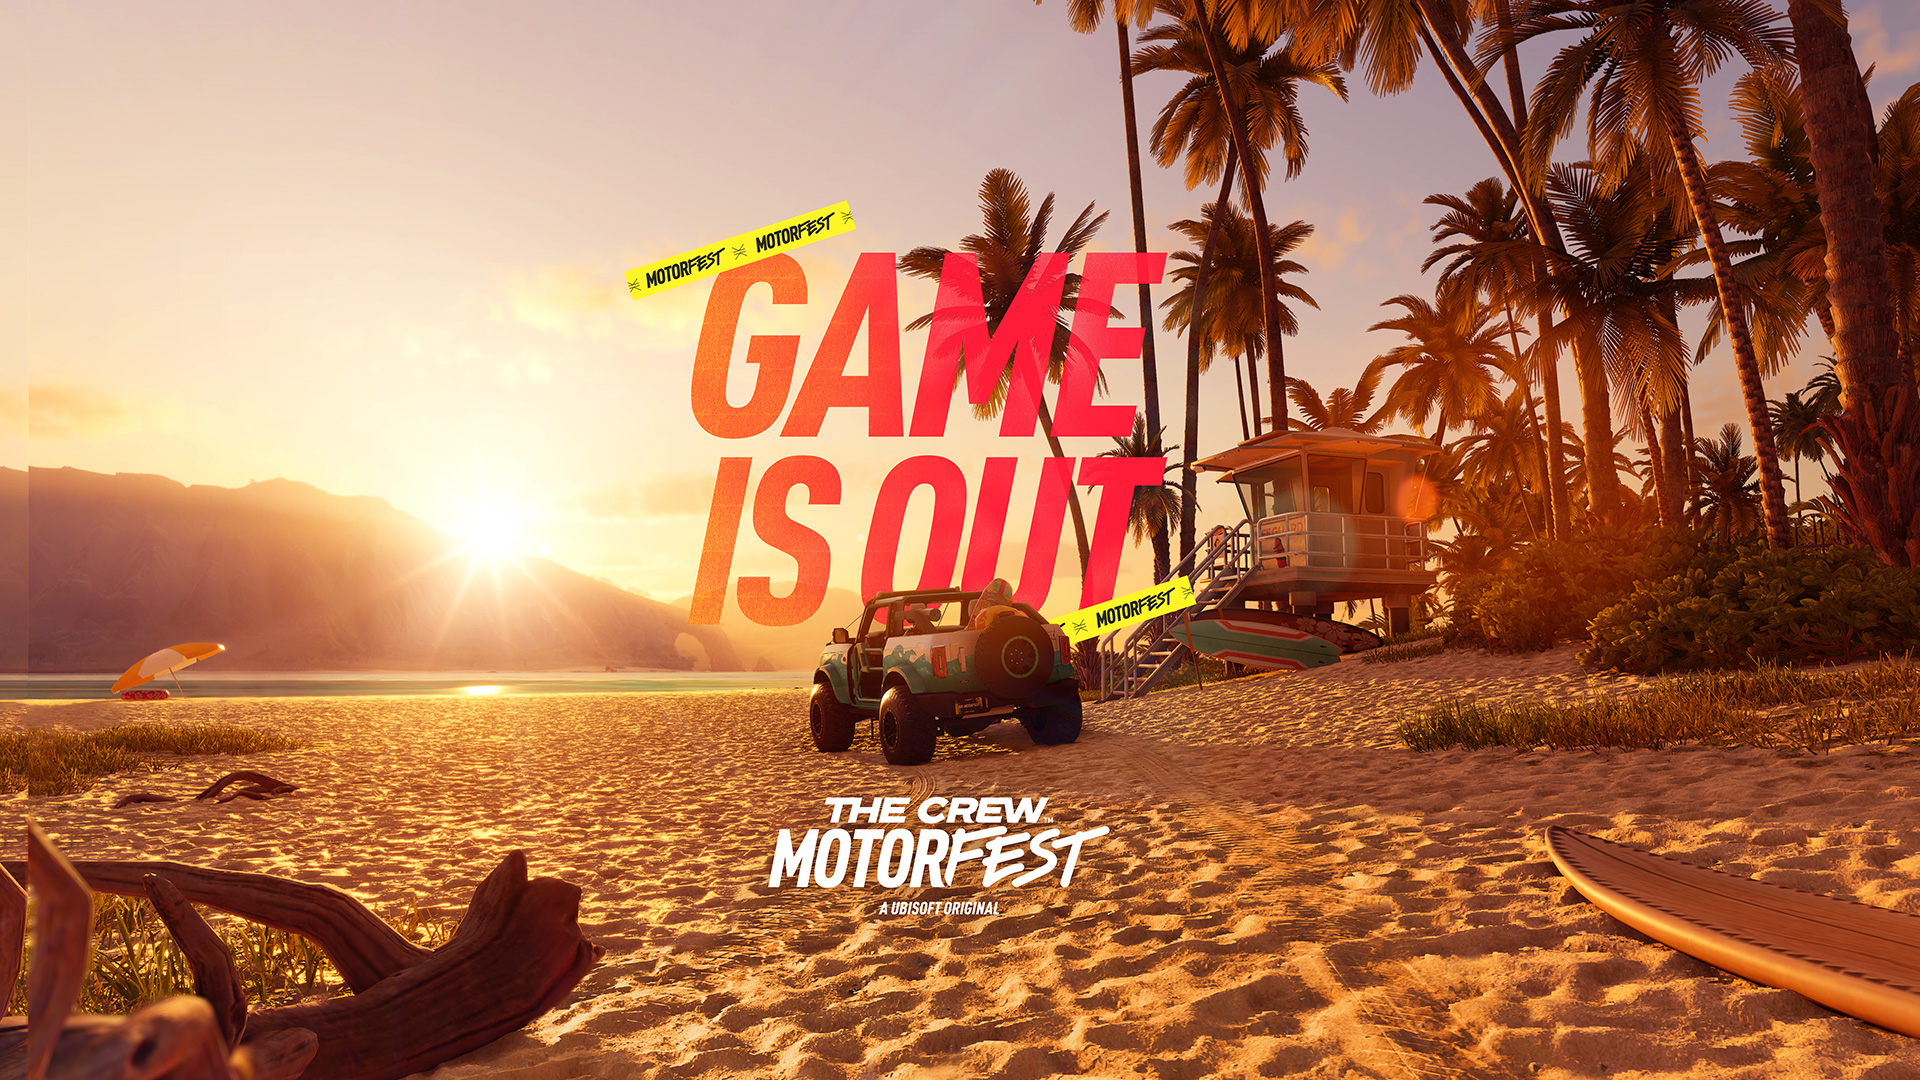 The Crew Motorfest Review - Gamereactor